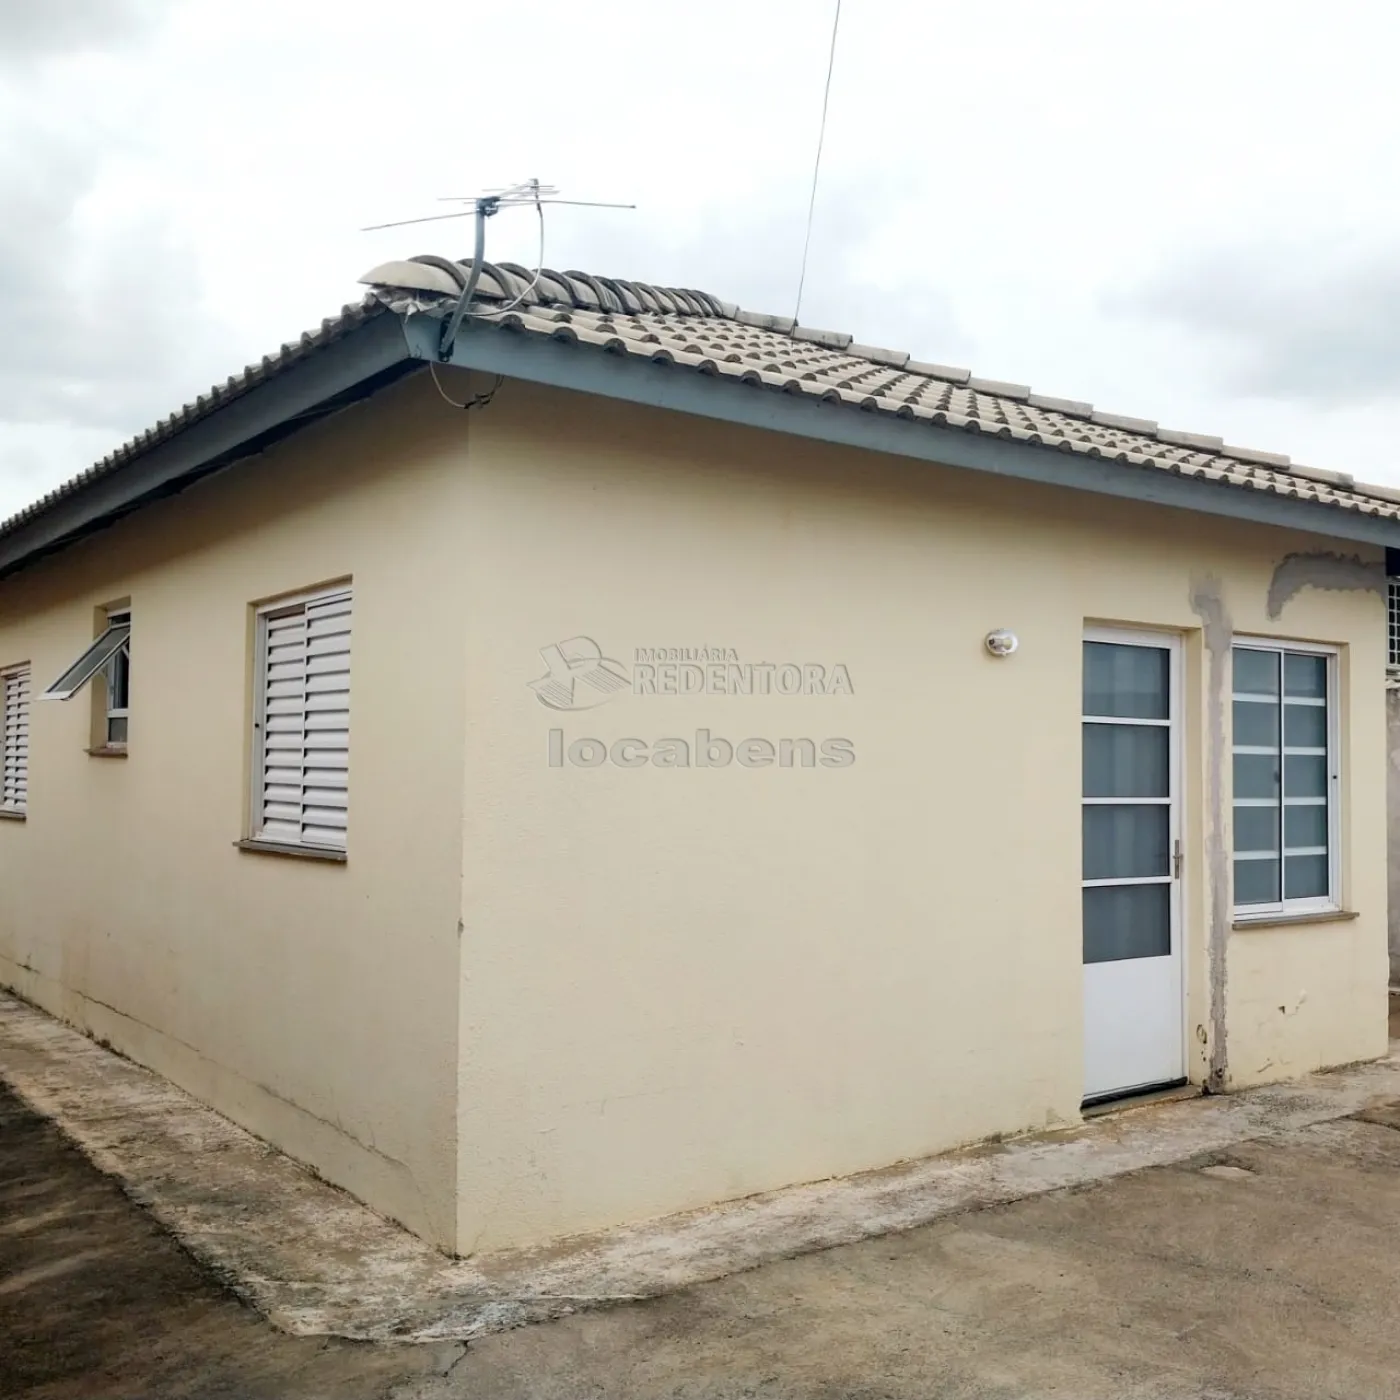 Comprar Casa / Padrão em São José do Rio Preto apenas R$ 190.000,00 - Foto 10